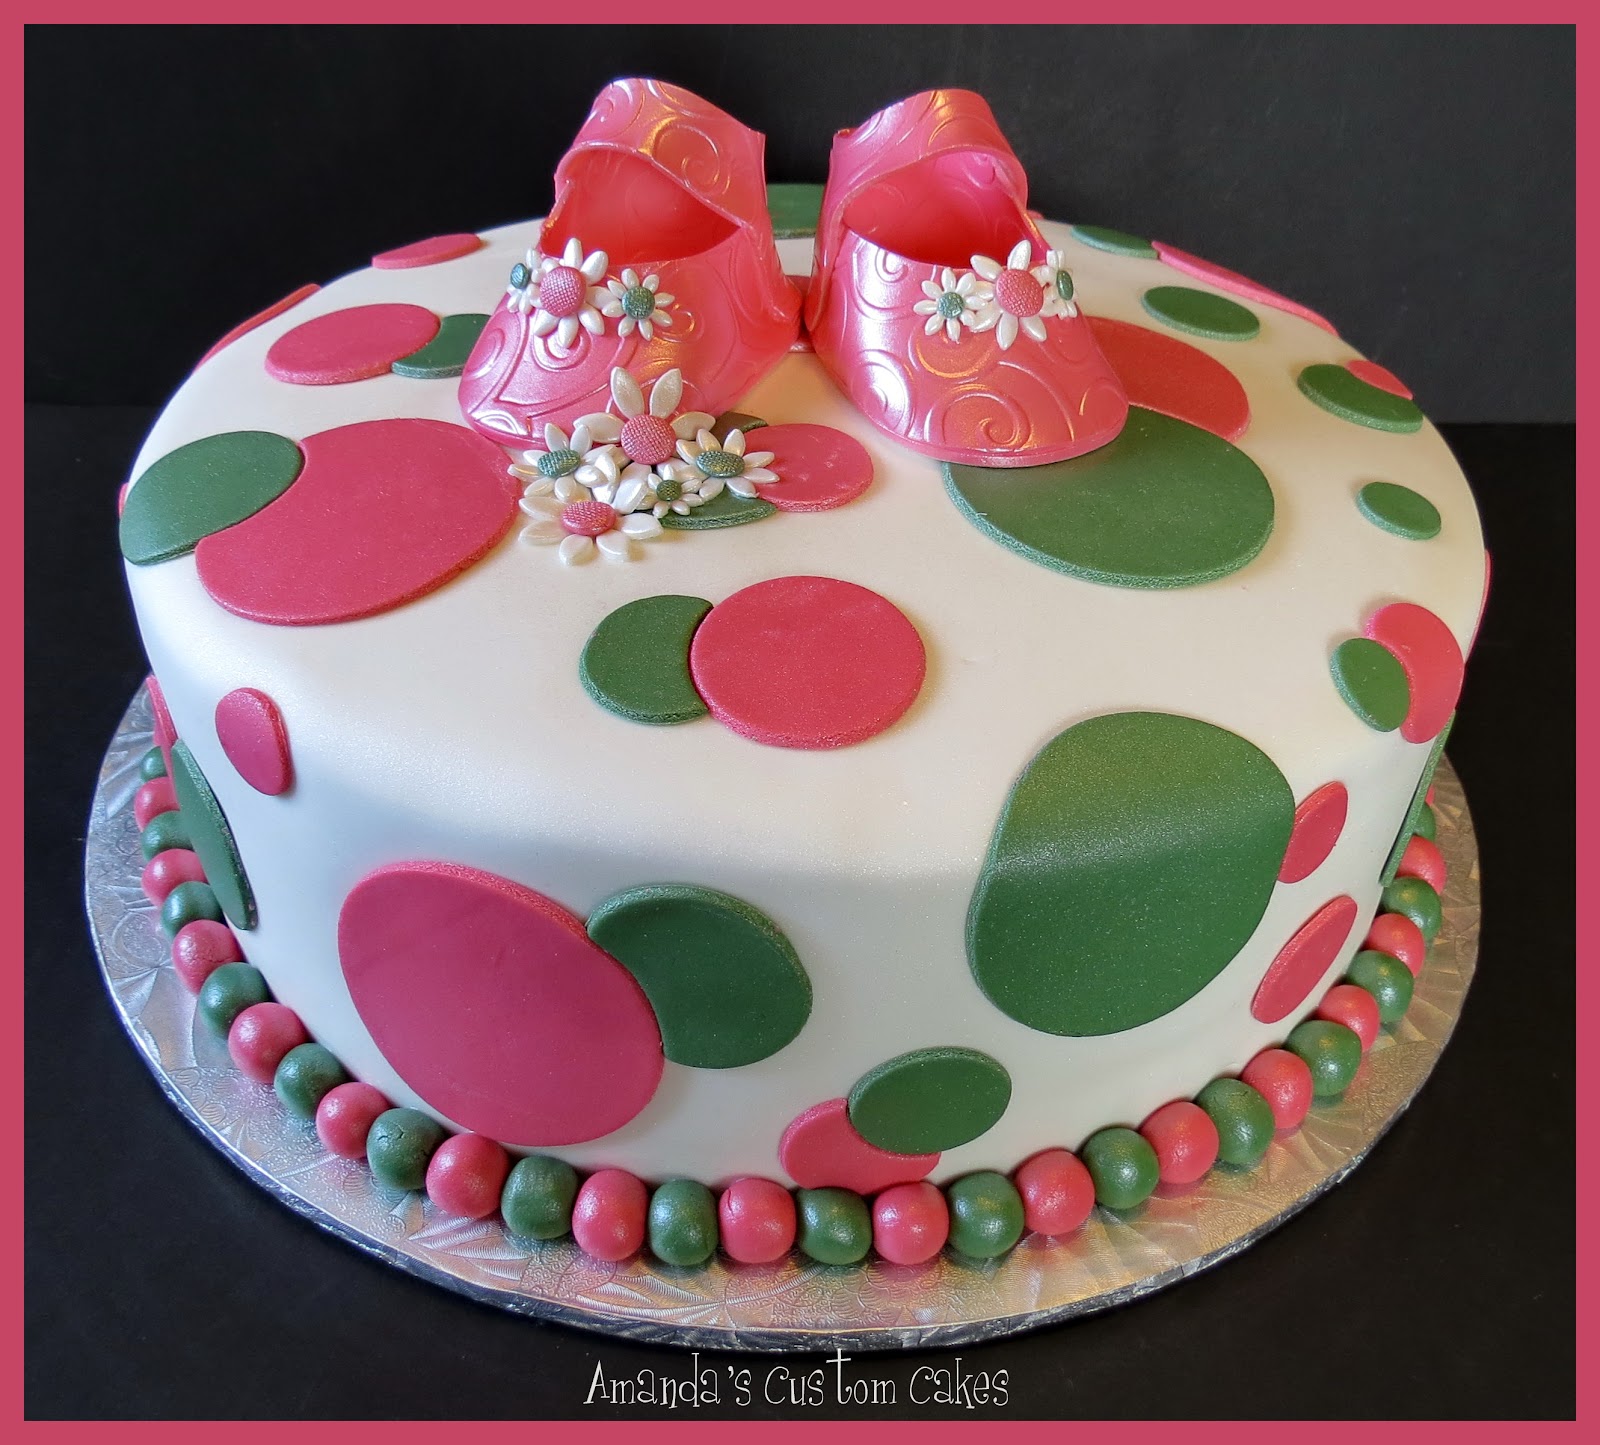 Amanda's Custom Cakes: Baby Shower Cake